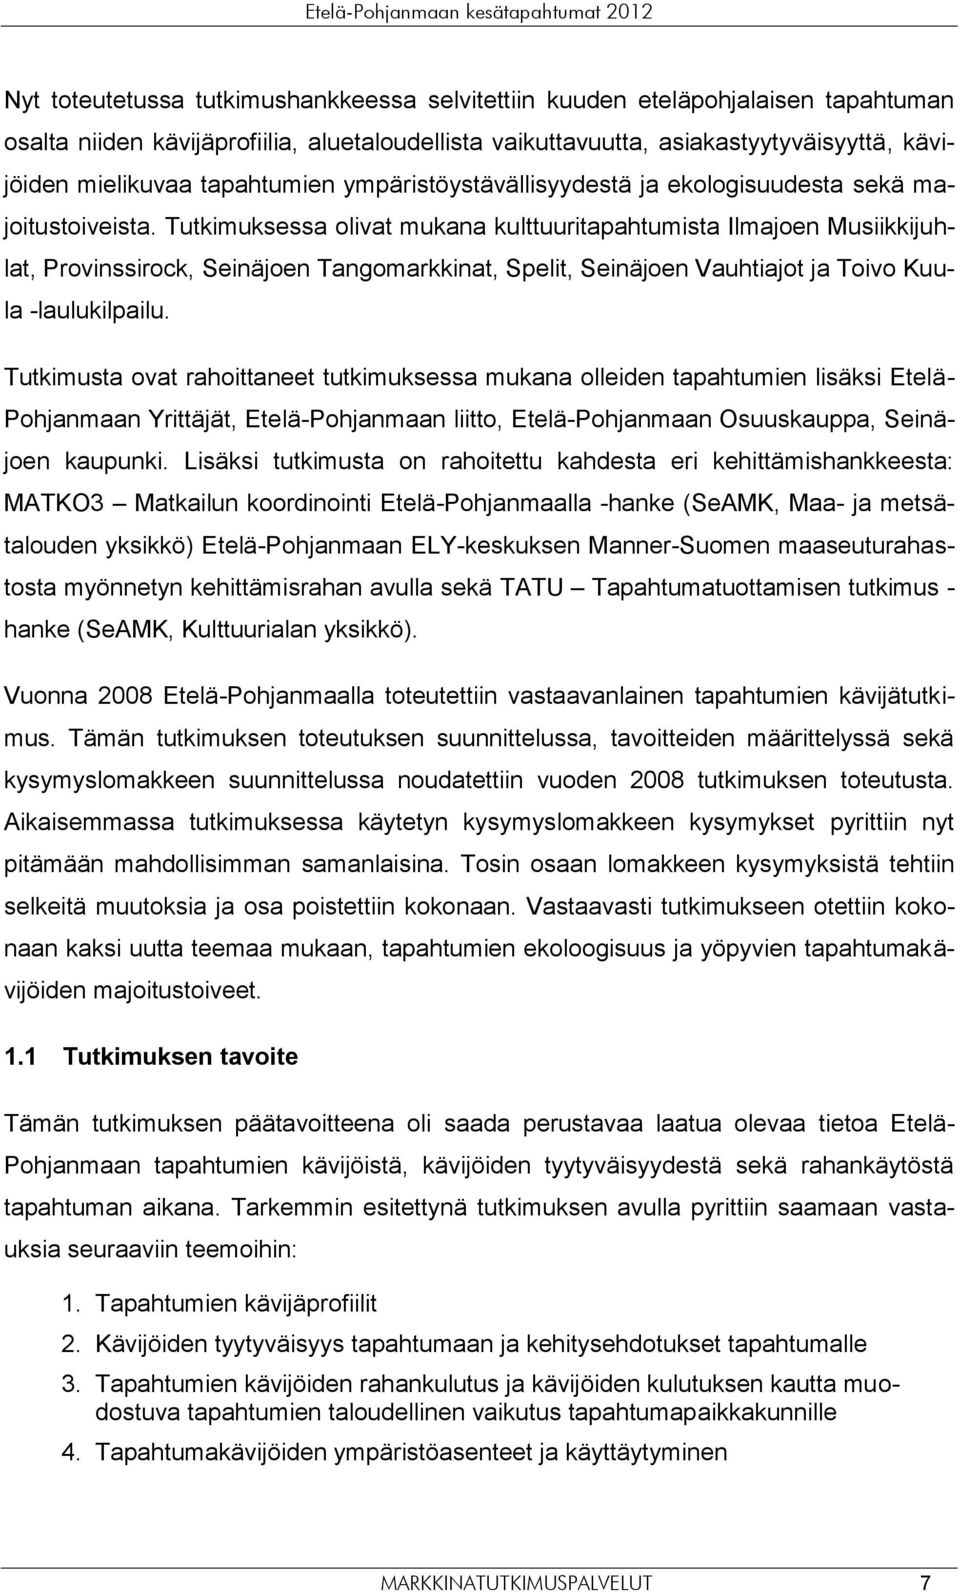 Tutkimuksessa olivat mukana kulttuuritapahtumista Ilmajoen Musiikkijuhlat, Provinssirock, Tangomarkkinat, Spelit, Vauhtiajot ja Toivo Kuula -laulukilpailu.